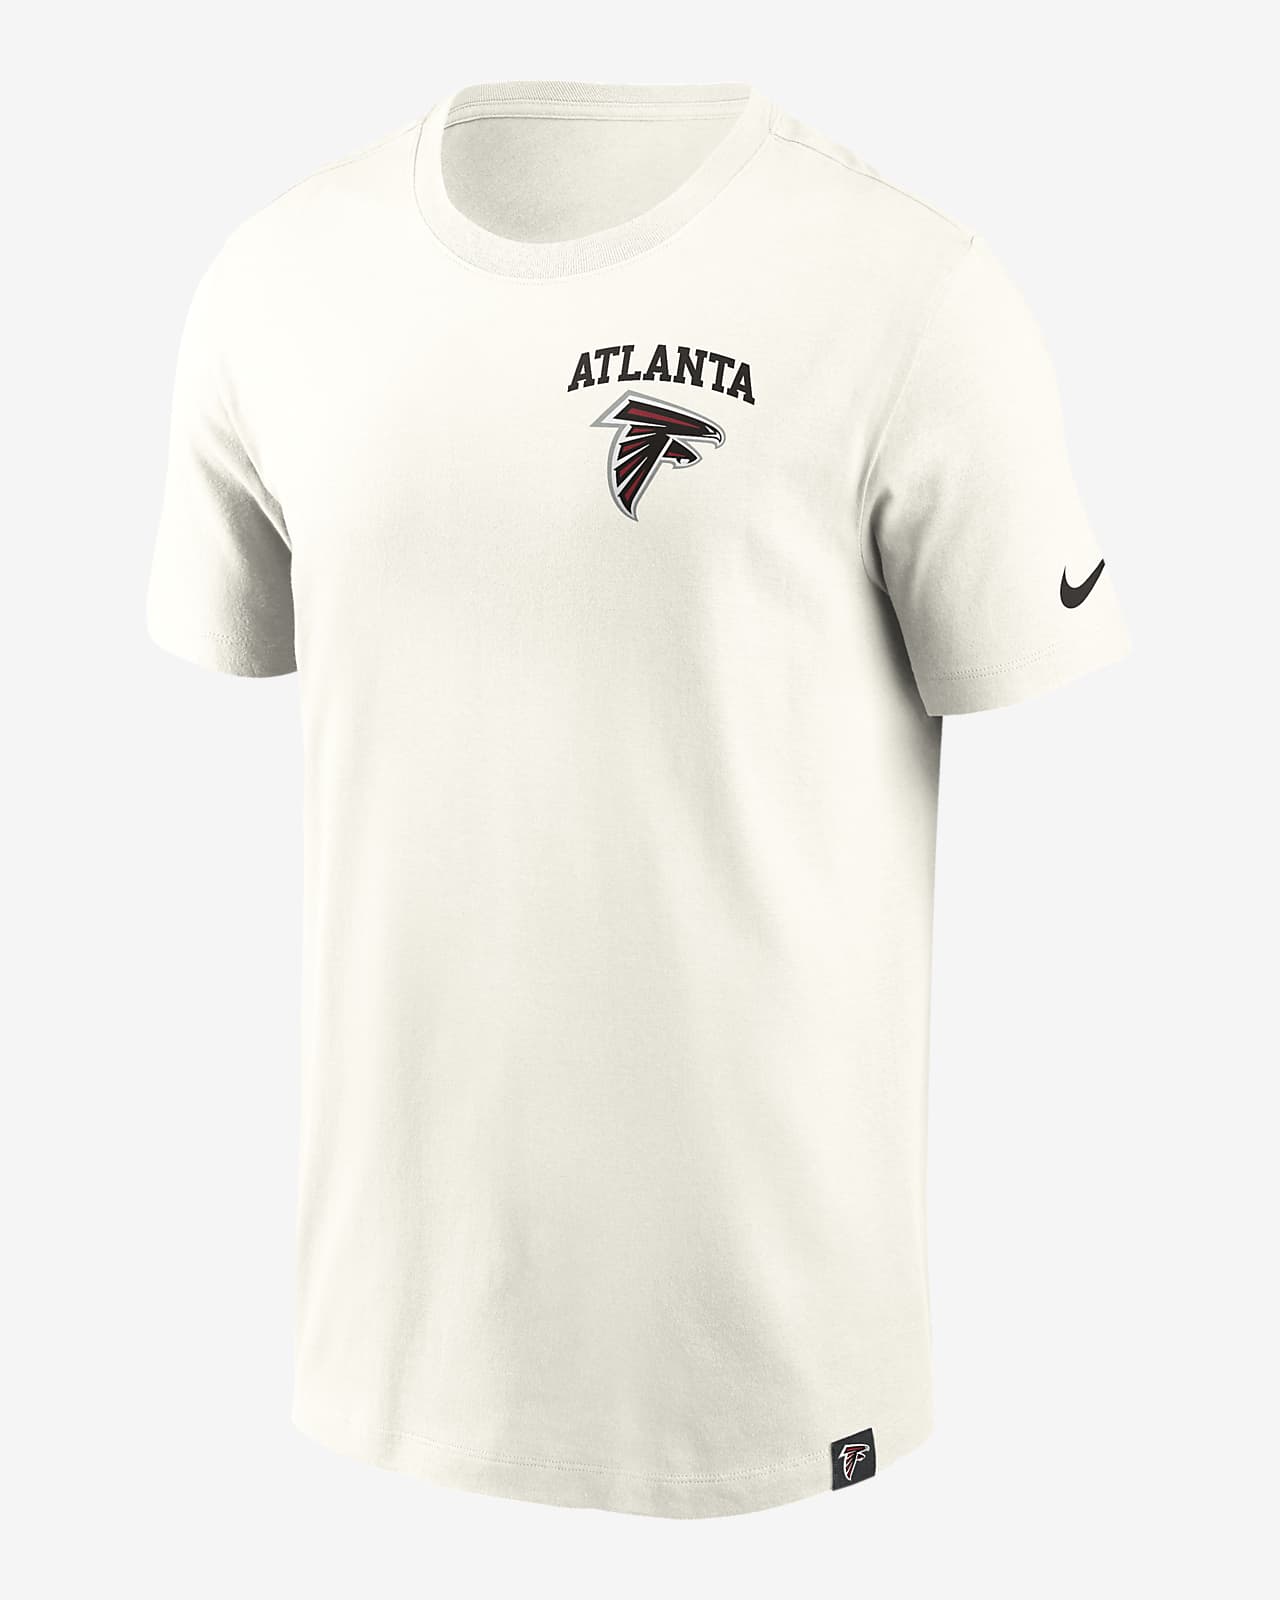 Playera Nike de la NFL para hombre Atlanta Falcons Blitz Essential